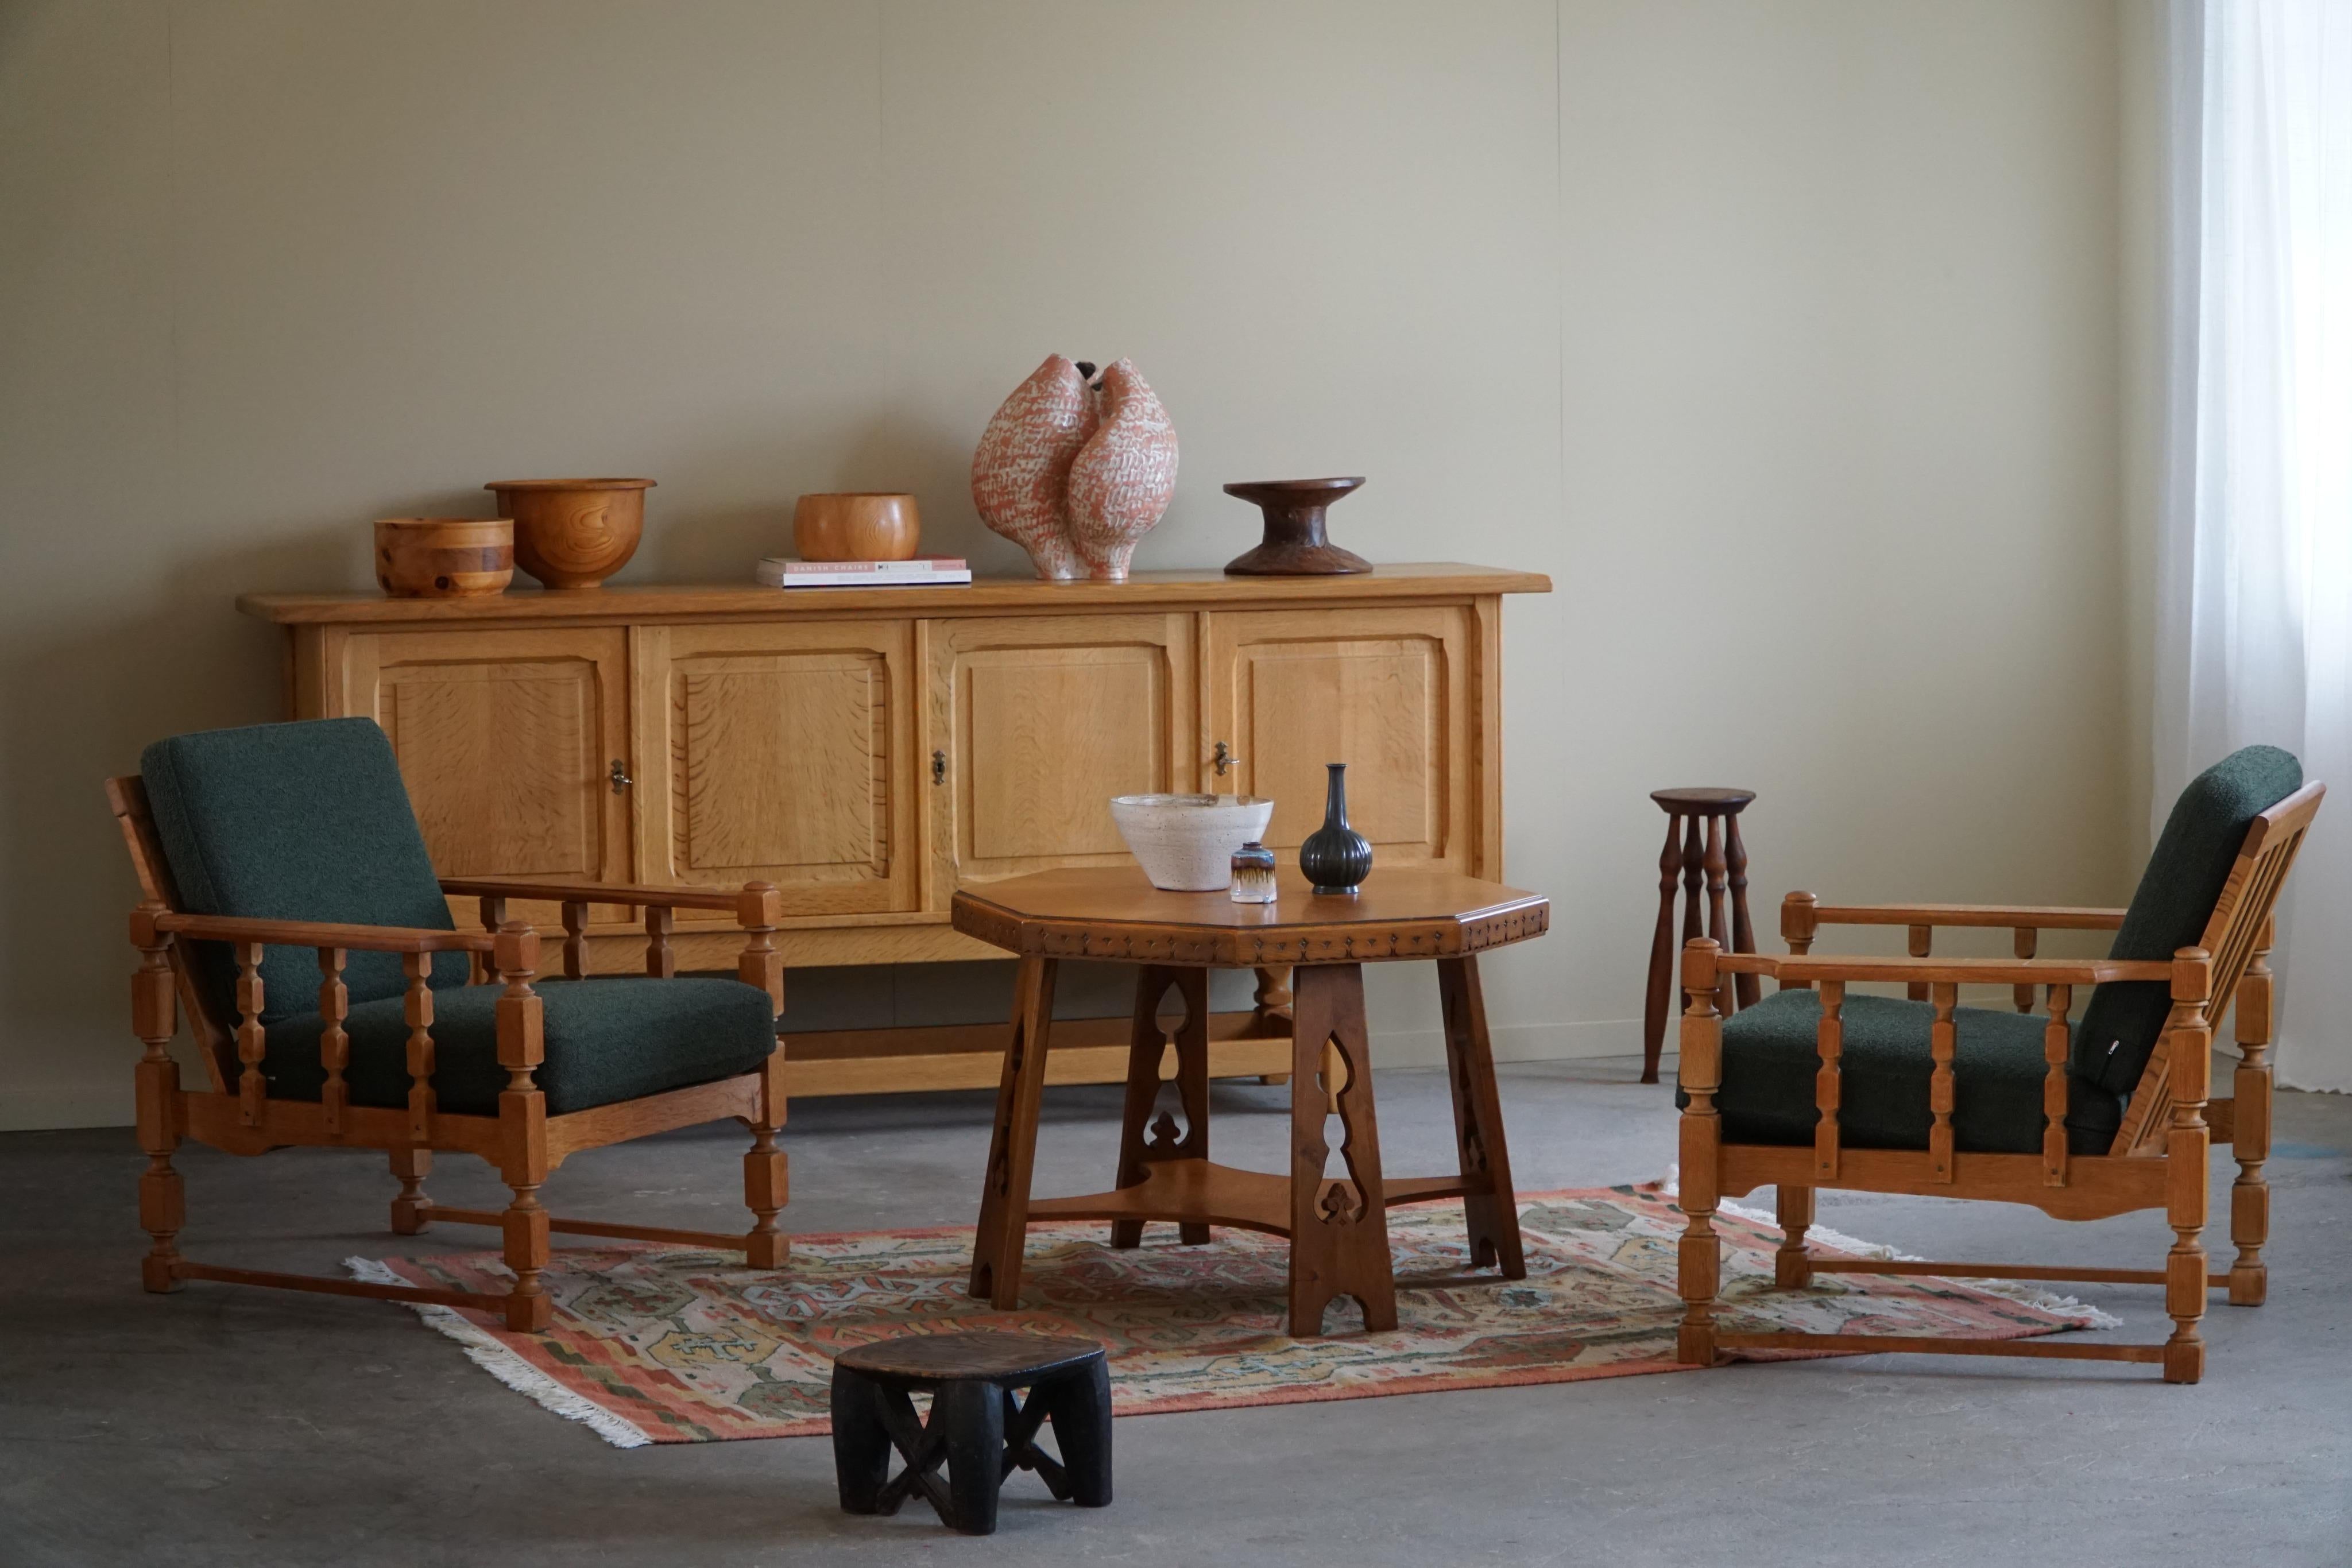 Dieser exquisite achteckige Art-Déco-Sofa-Beistelltisch ist ein beeindruckendes Zeugnis der Handwerkskunst eines dänischen Tischlers in der glamourösen Ära der 1930er Jahre. Dieses aus Eichenholz gefertigte Möbelstück vereint Form und Funktion und